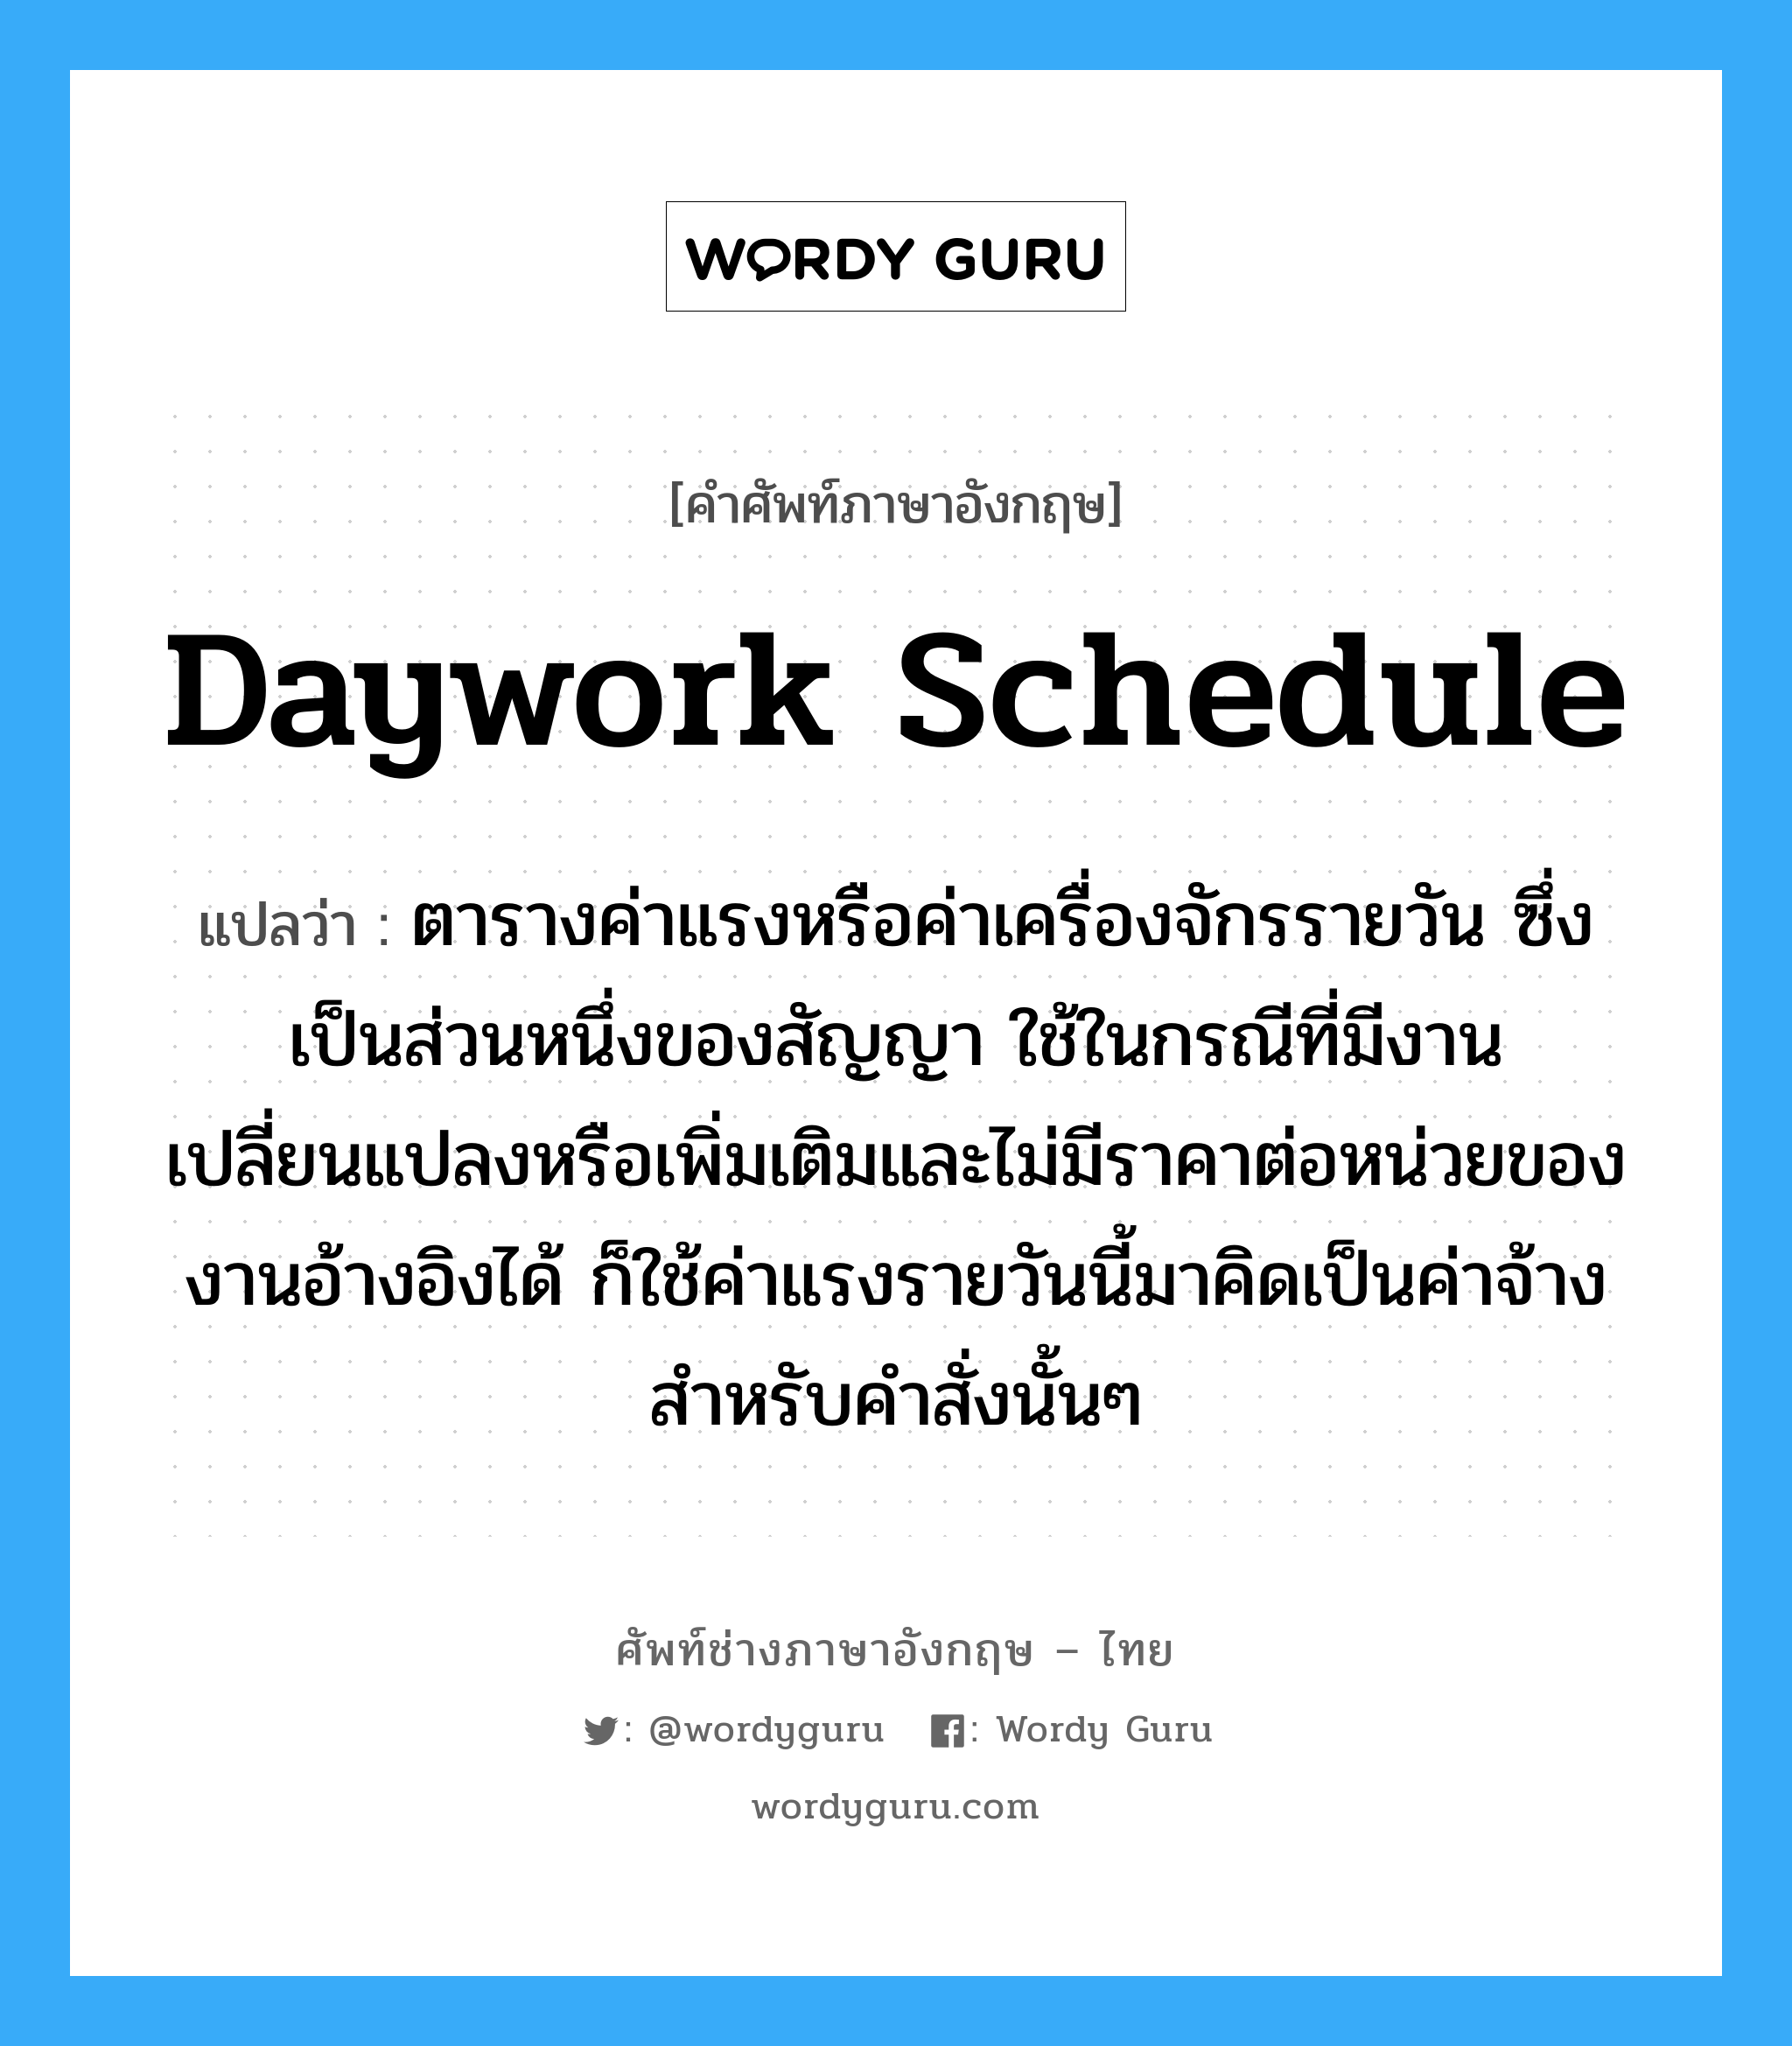 Daywork Schedule แปลว่า?, คำศัพท์ช่างภาษาอังกฤษ - ไทย Daywork Schedule คำศัพท์ภาษาอังกฤษ Daywork Schedule แปลว่า ตารางค่าแรงหรือค่าเครื่องจักรรายวัน ซึ่งเป็นส่วนหนึ่งของสัญญา ใช้ในกรณีที่มีงานเปลี่ยนแปลงหรือเพิ่มเติมและไม่มีราคาต่อหน่วยของงานอ้างอิงได้ ก็ใช้ค่าแรงรายวันนี้มาคิดเป็นค่าจ้างสำหรับคำสั่งนั้นๆ